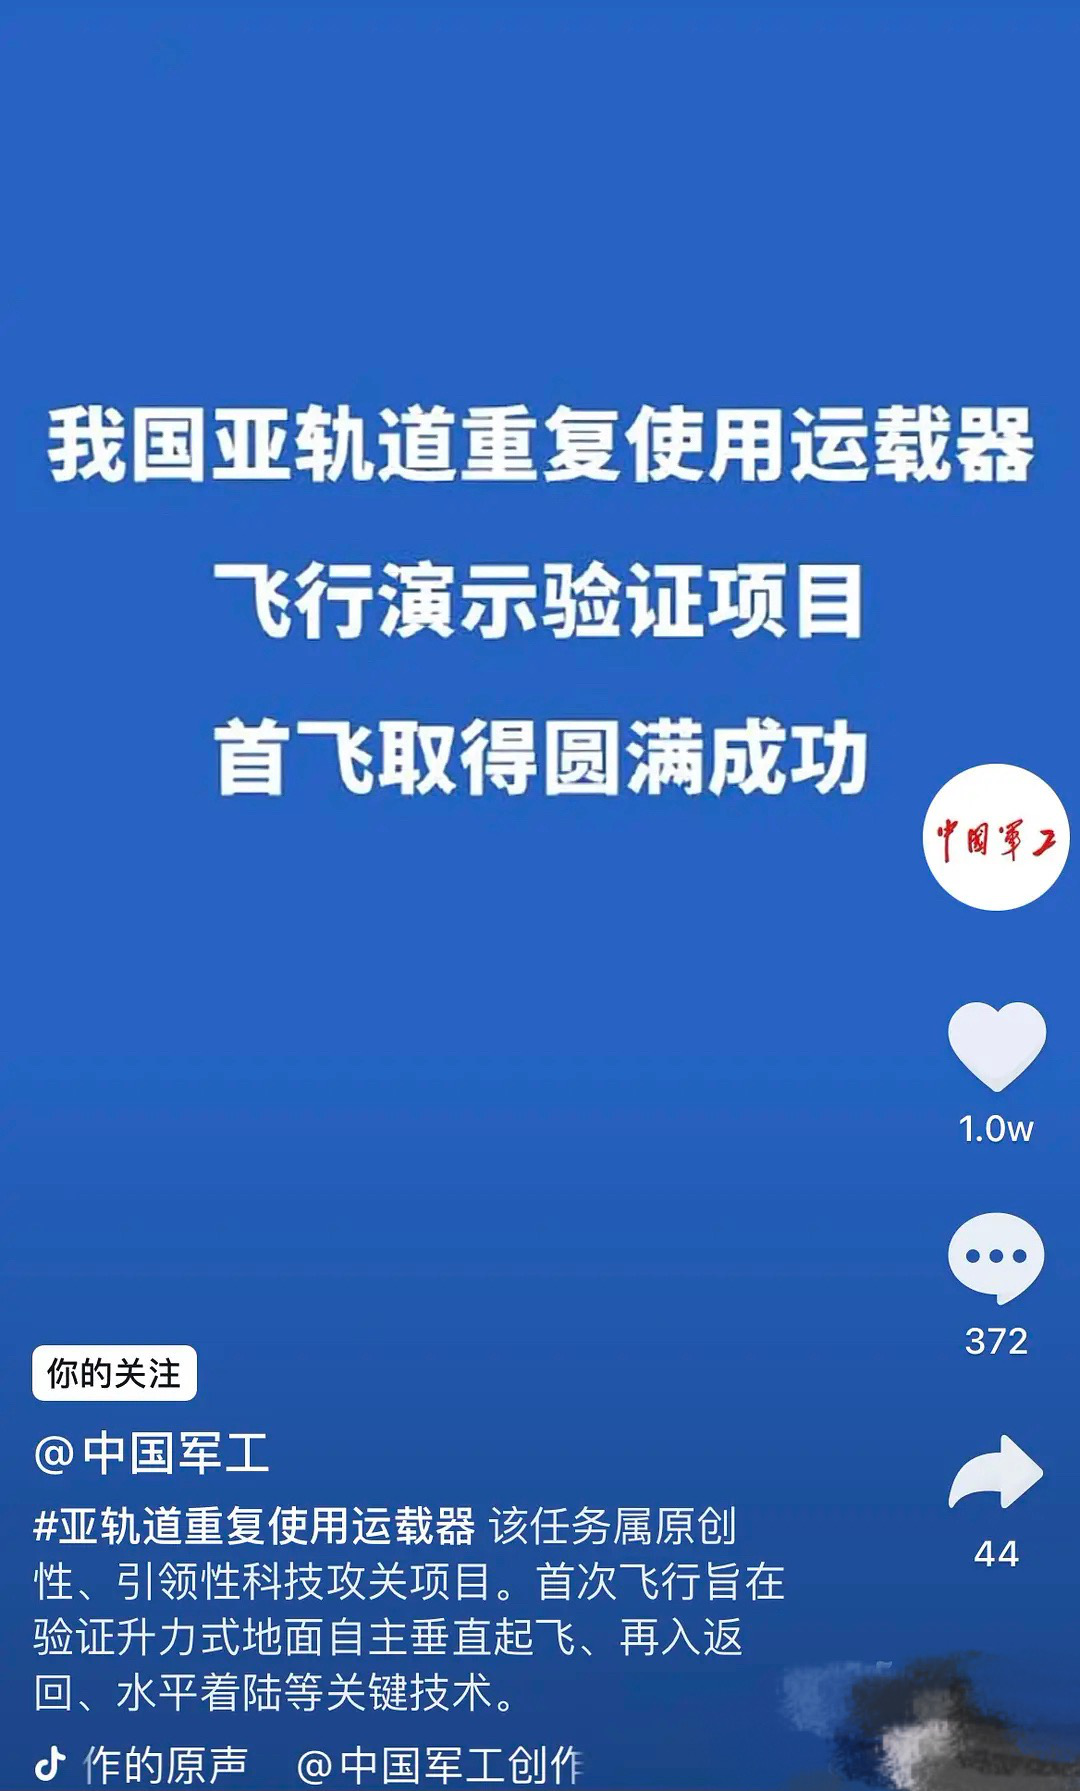 “中国军工”回应仅展示运载器首飞成功文字：过于先进，不便展示，网友笑称“凡尔赛”